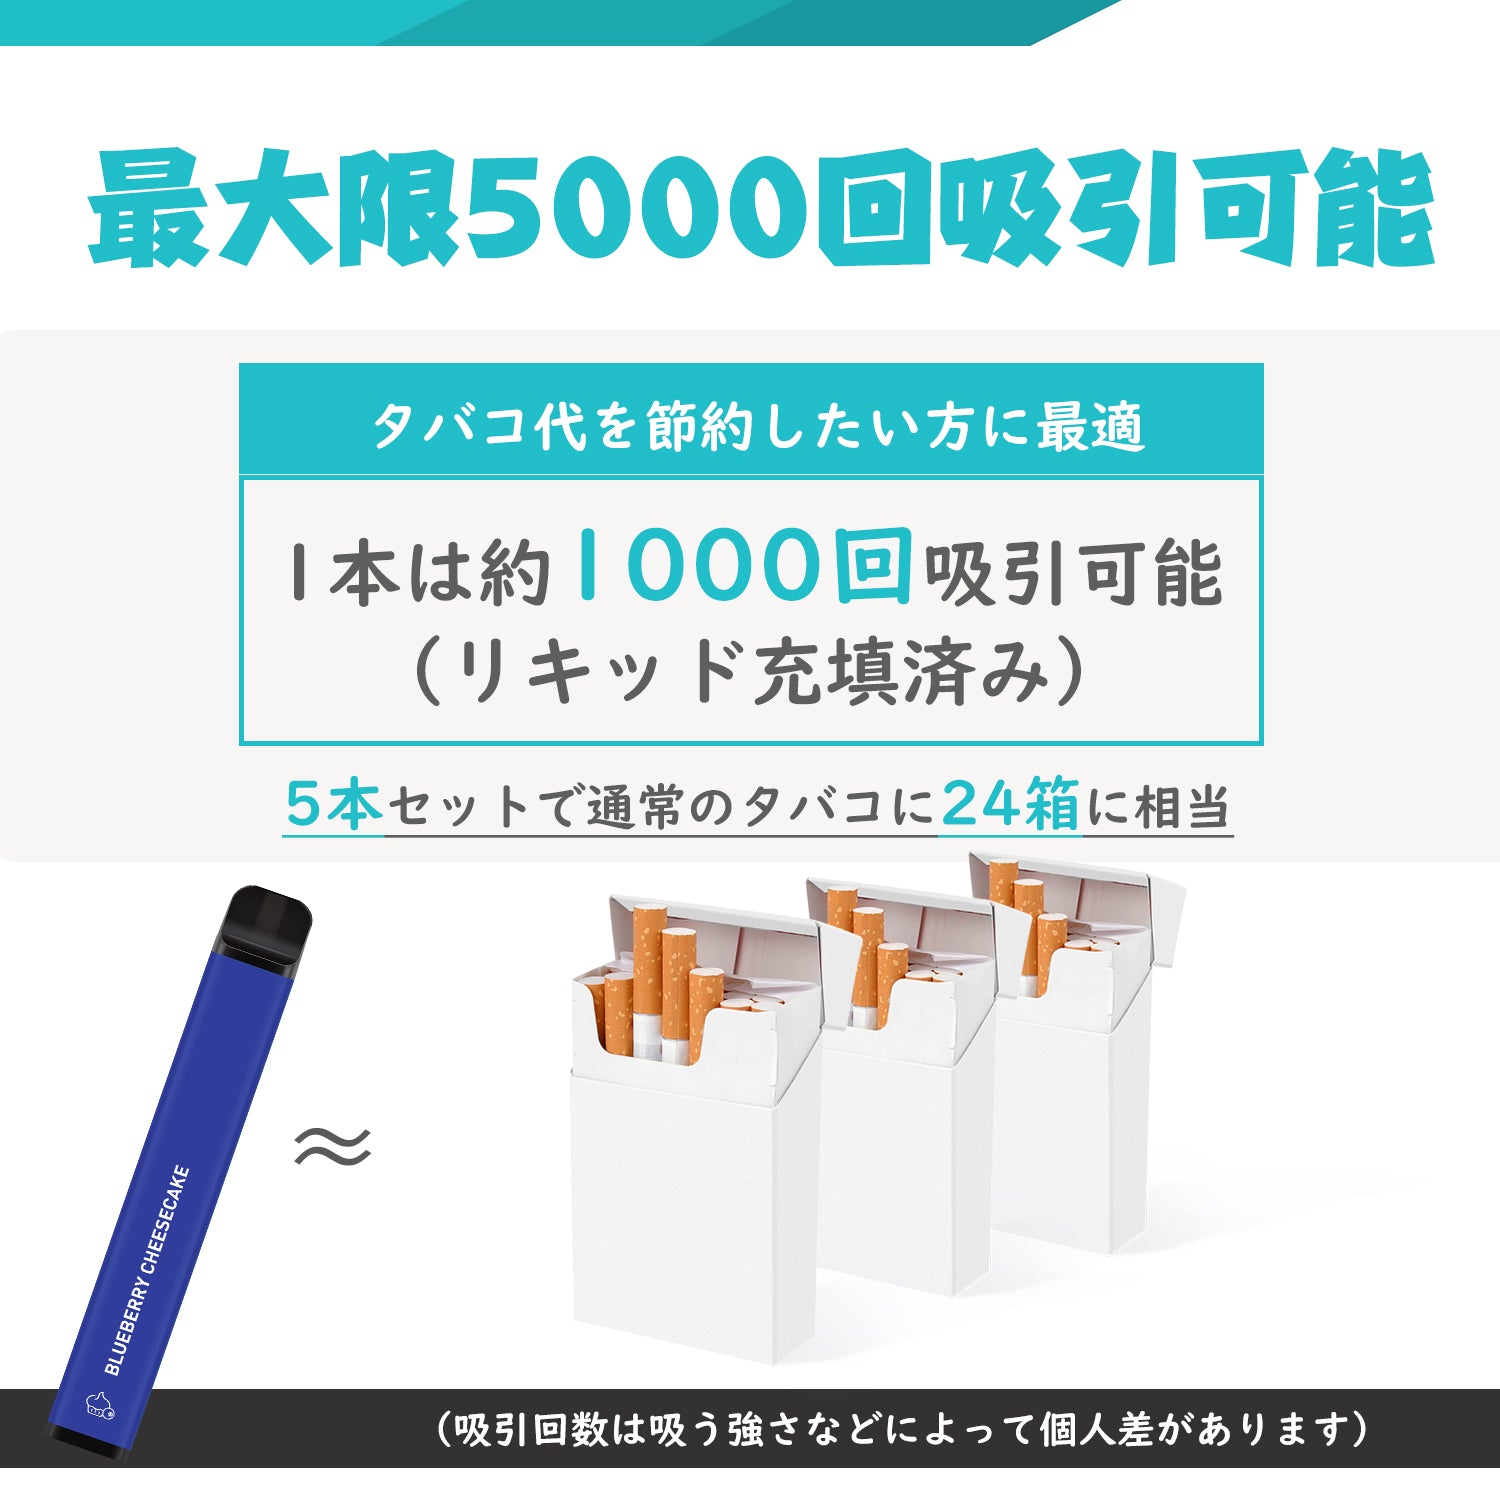 NICOCO elektronische Zigarette Einweg 5-teiliges Set MIX 1